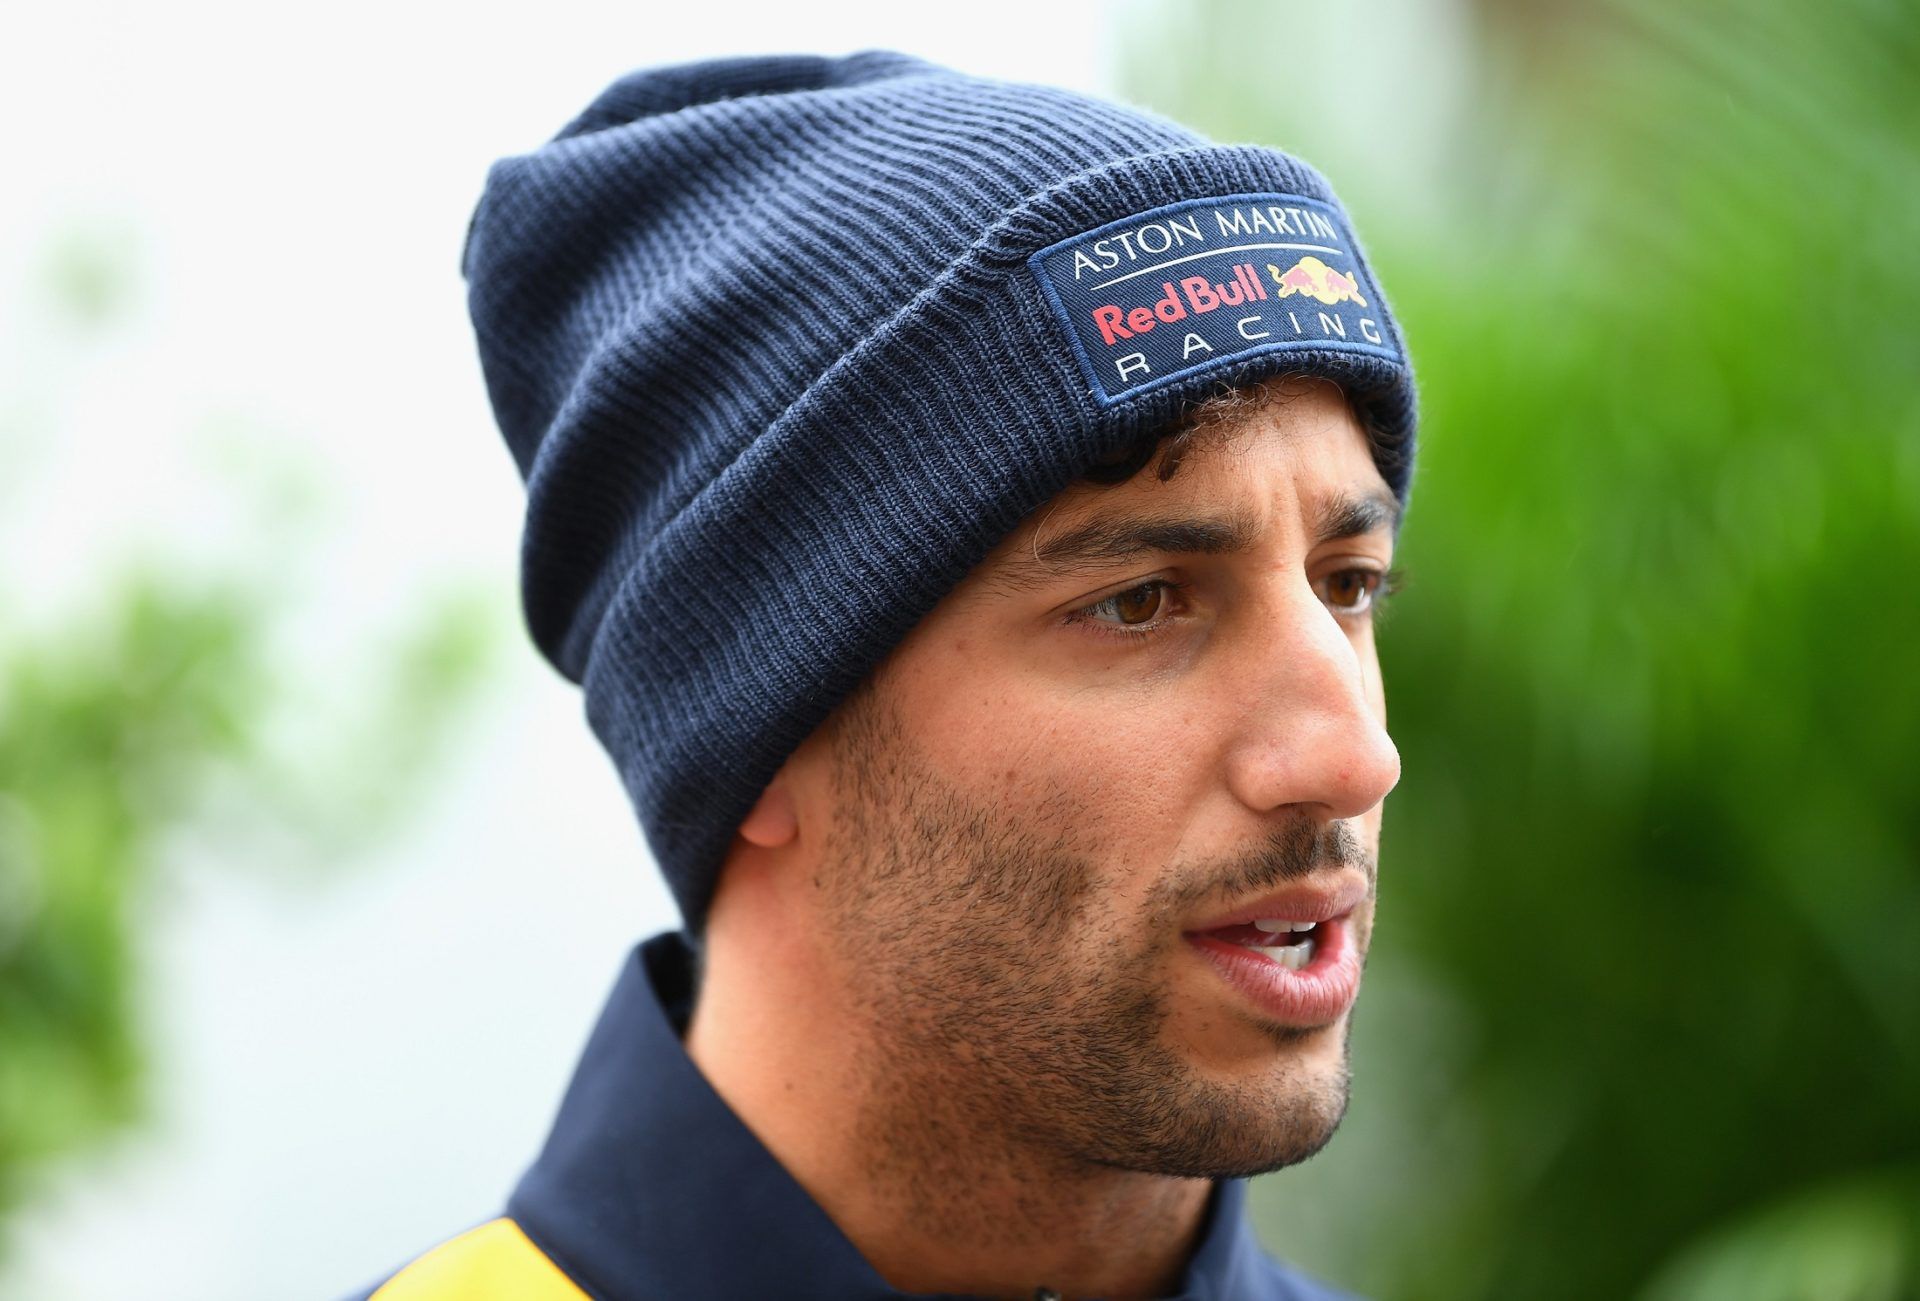 Oval circuits 'creeps' Ricciardo out as Hamilton eyes another NASCAR run